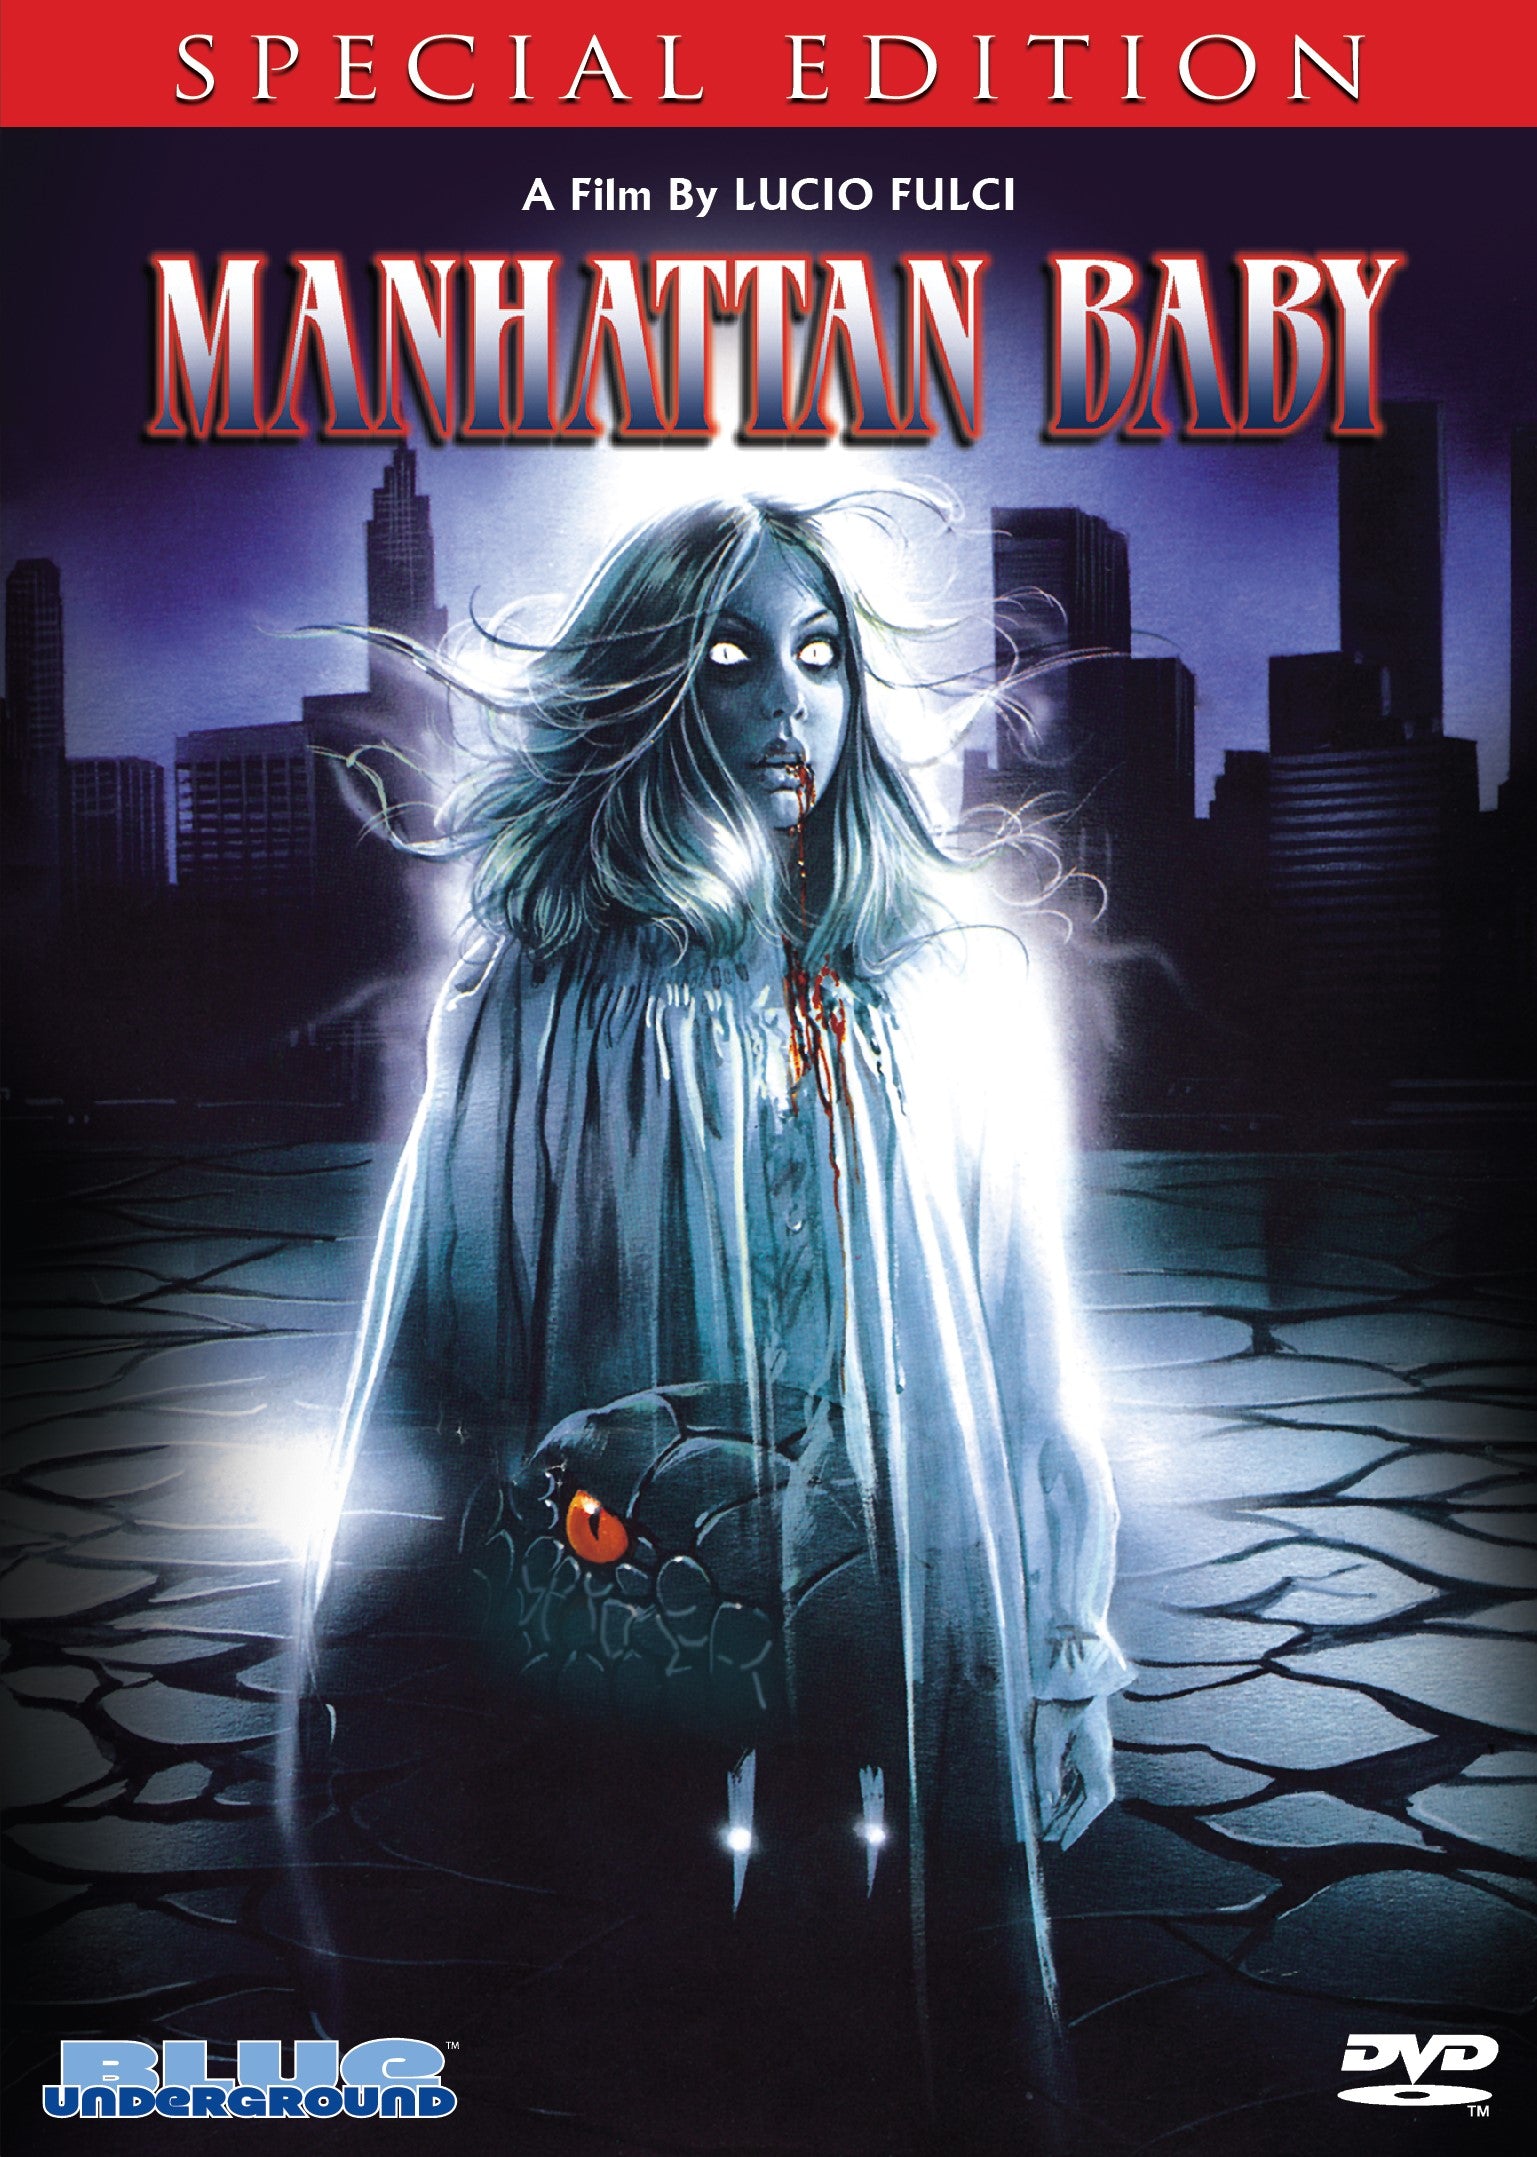 MANHATTAN BABY (SPECIAL EDITION) DVD